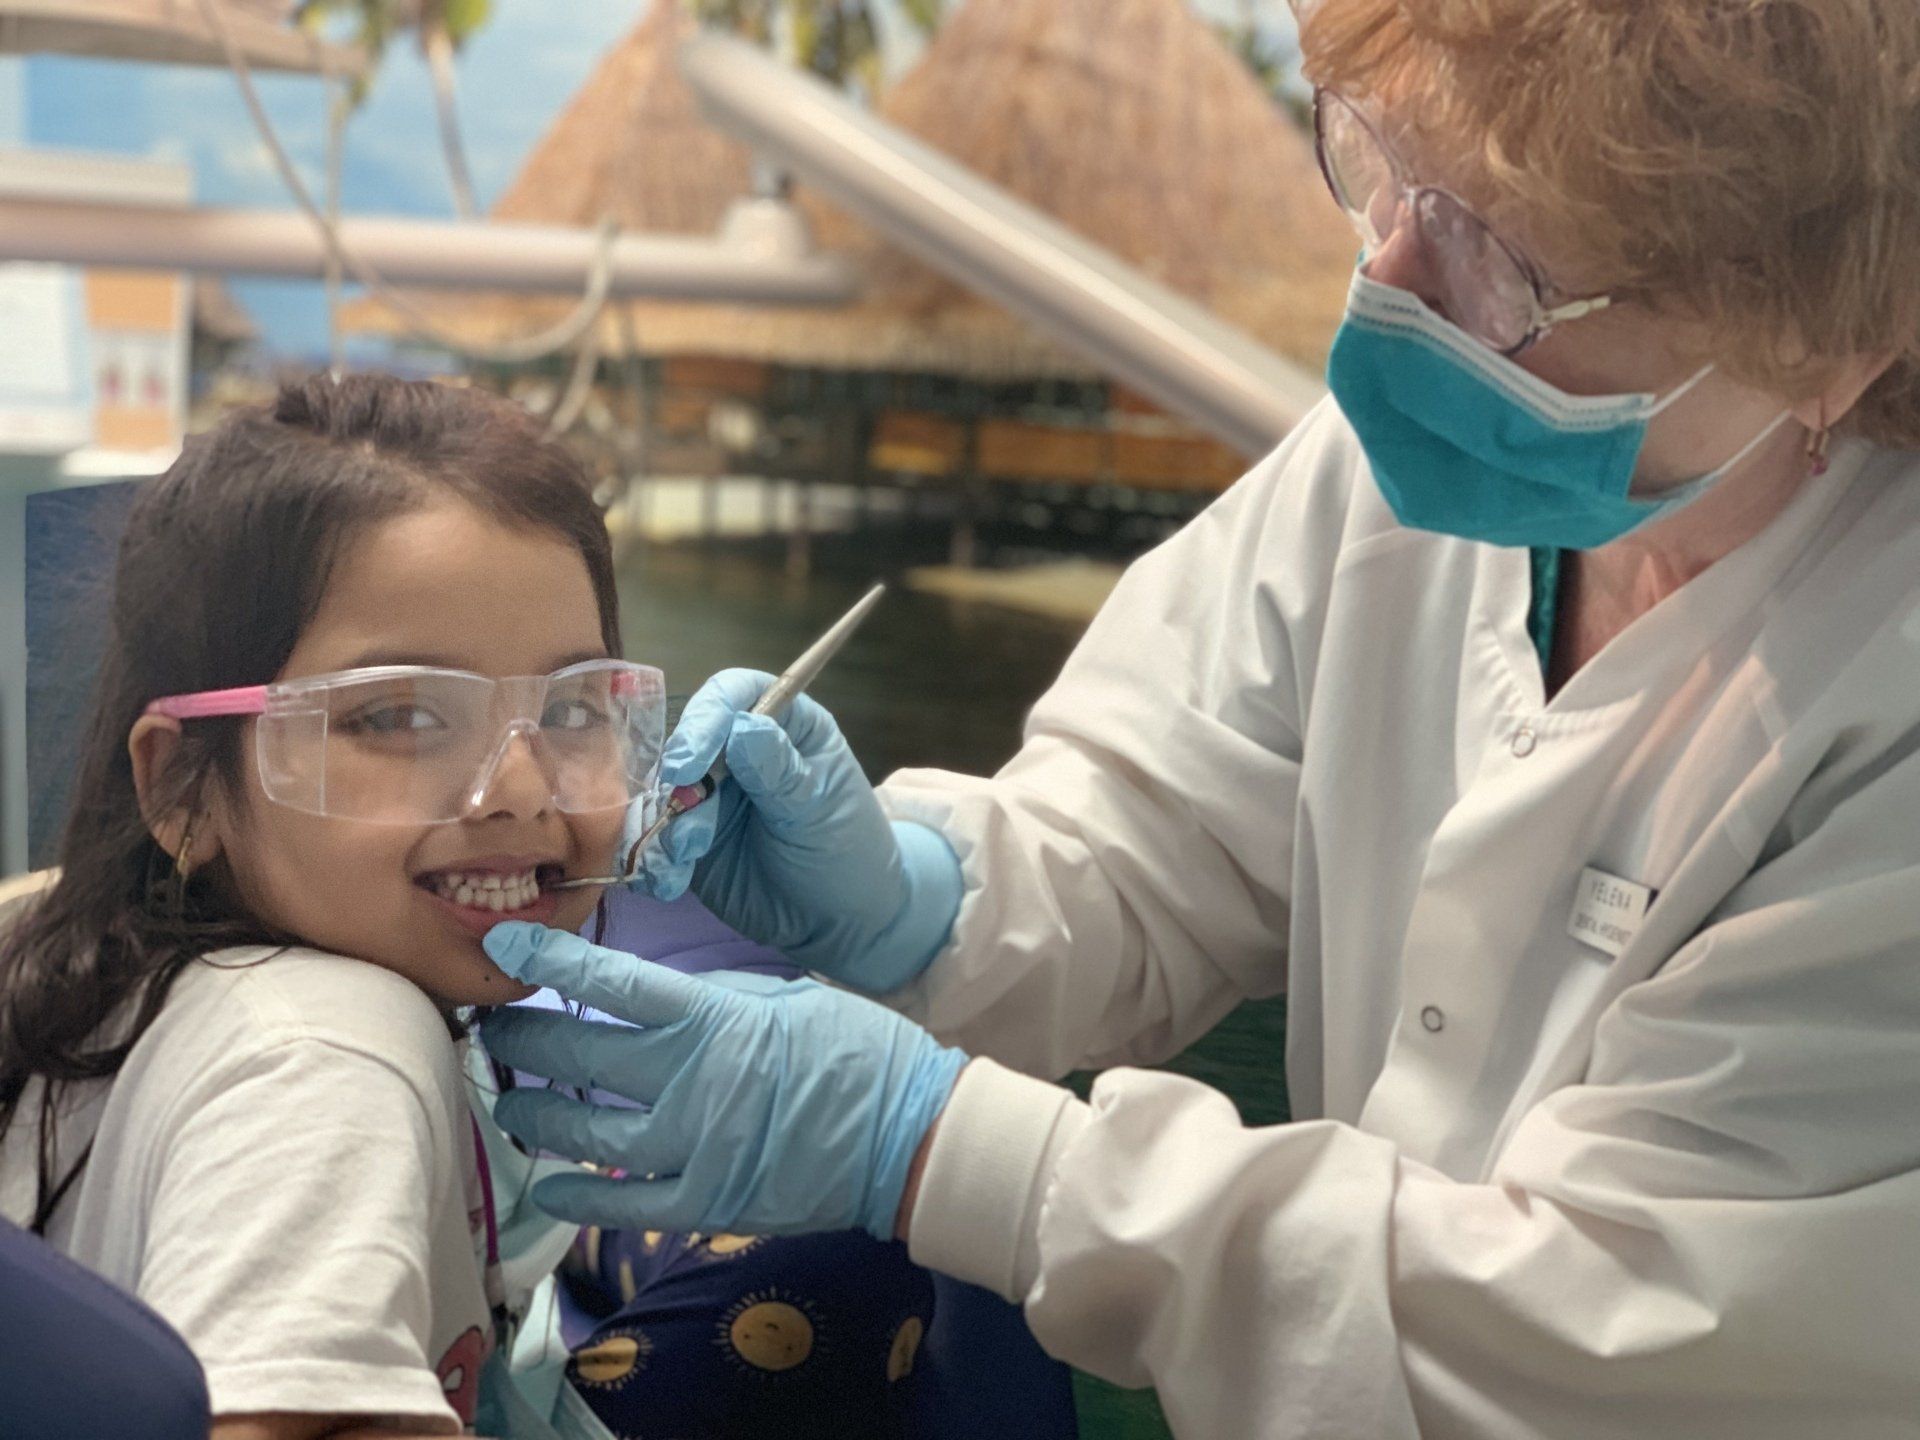 dentist checking little girl's teeth